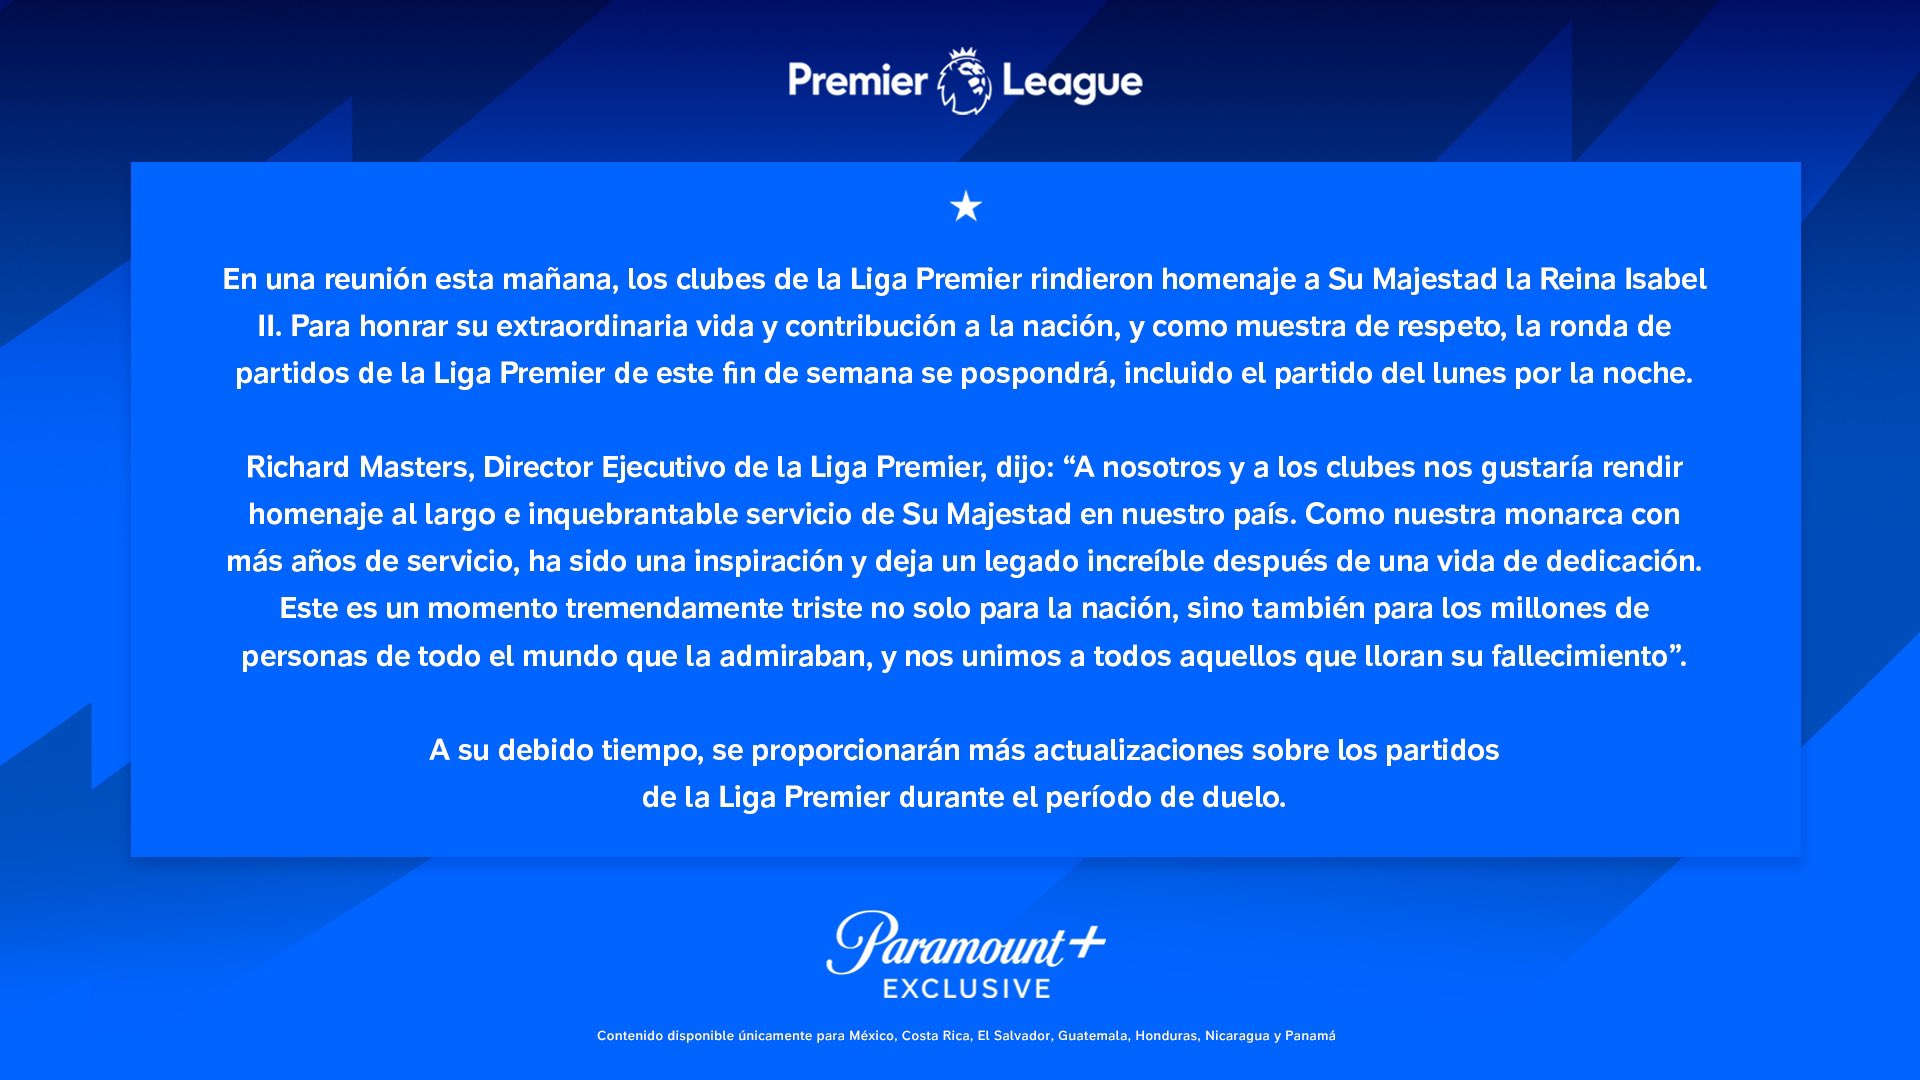 Paramount+ Latinoamérica on Twitter: "Comunicado oficial de la Liga no se ha comunicado cuándo reanudarán los partidos de la temporada. https://t.co/QA2emcEETo" / Twitter